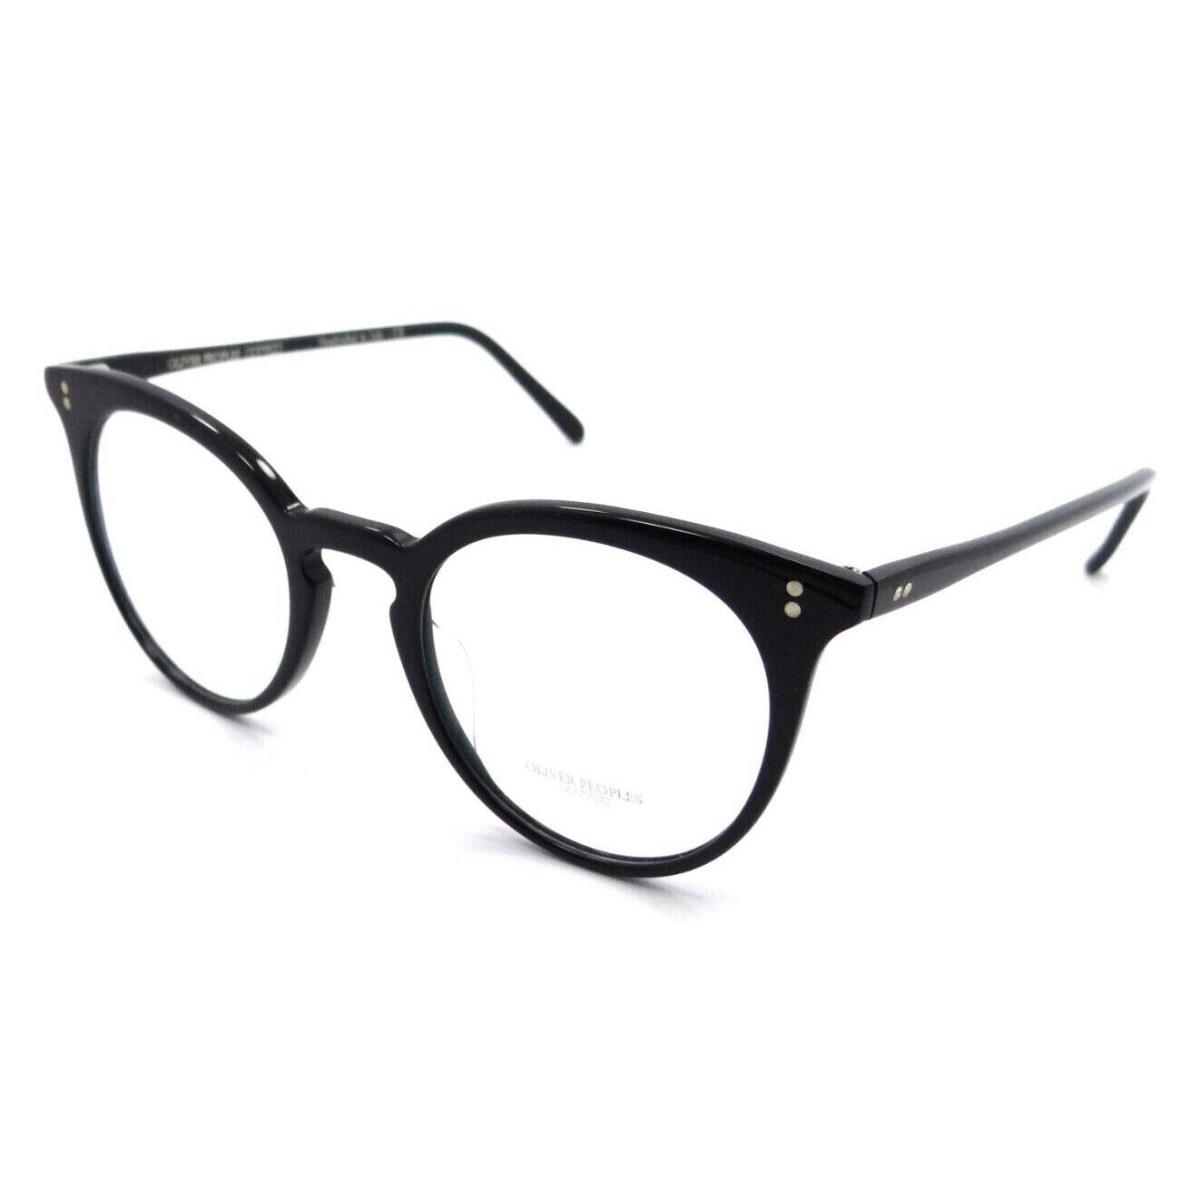 Oliver Peoples Eyeglasses Frames OV 5348U 1005 47-21-145 Jonsi Black Italy